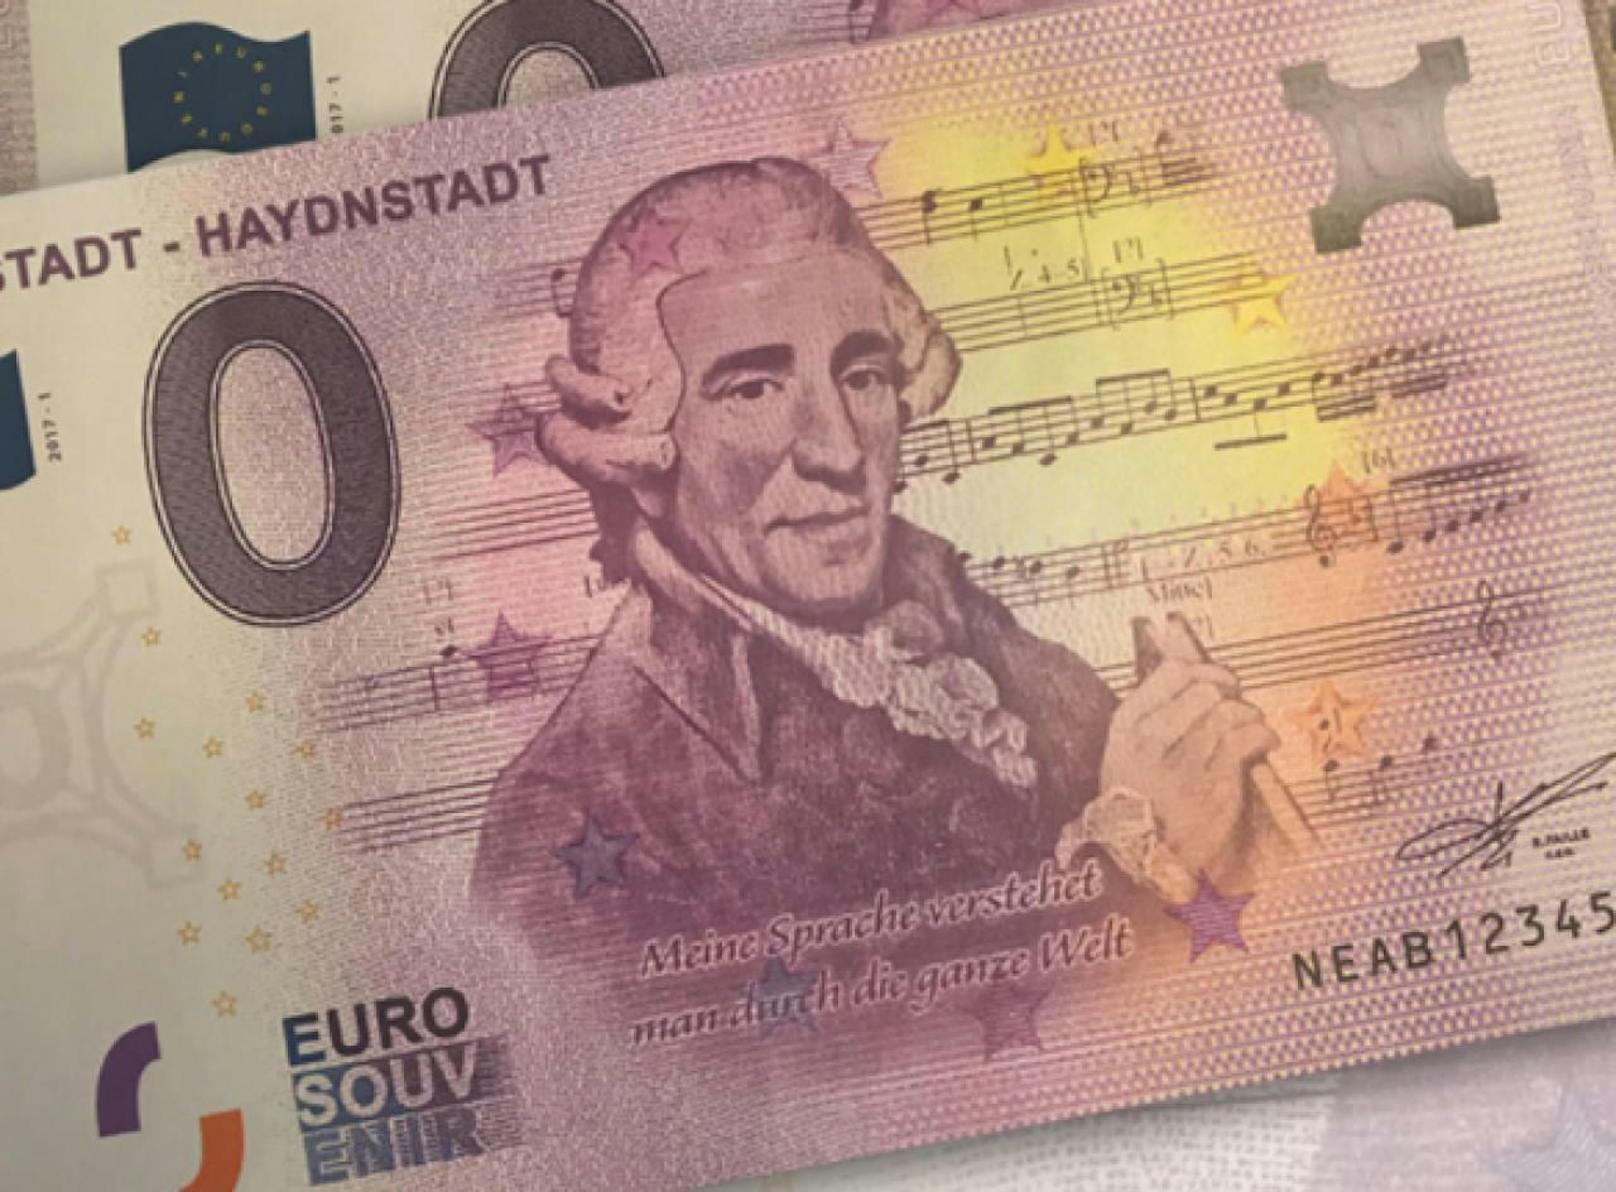 Für 3.50 Euro können Sammler diesen Null-Euro-Schein erstehen.